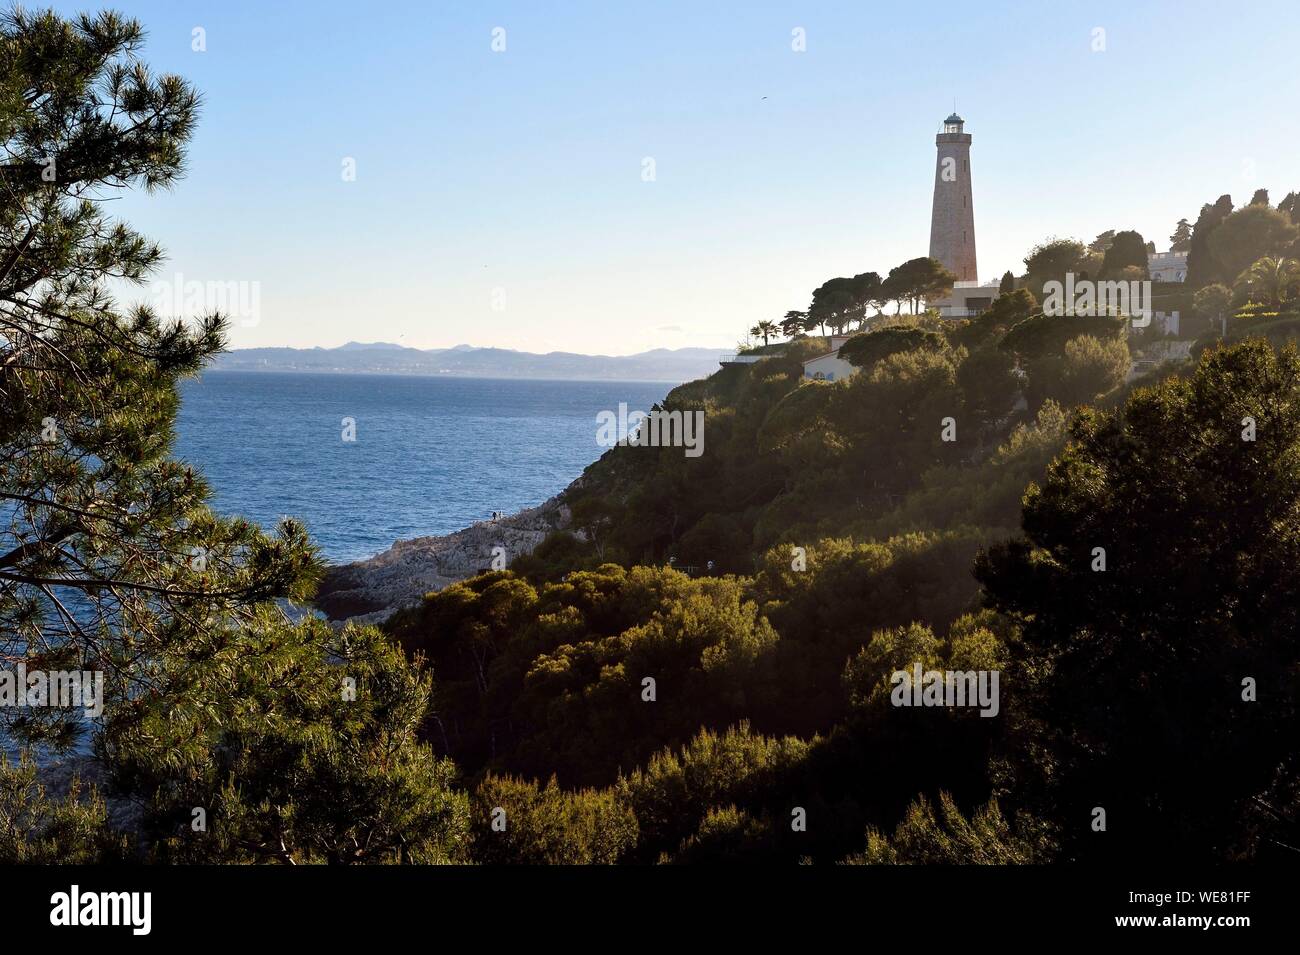 France, Alpes Maritimes, Saint Jean Cap Ferrat, the lighthouse of Cap Ferrat Stock Photo